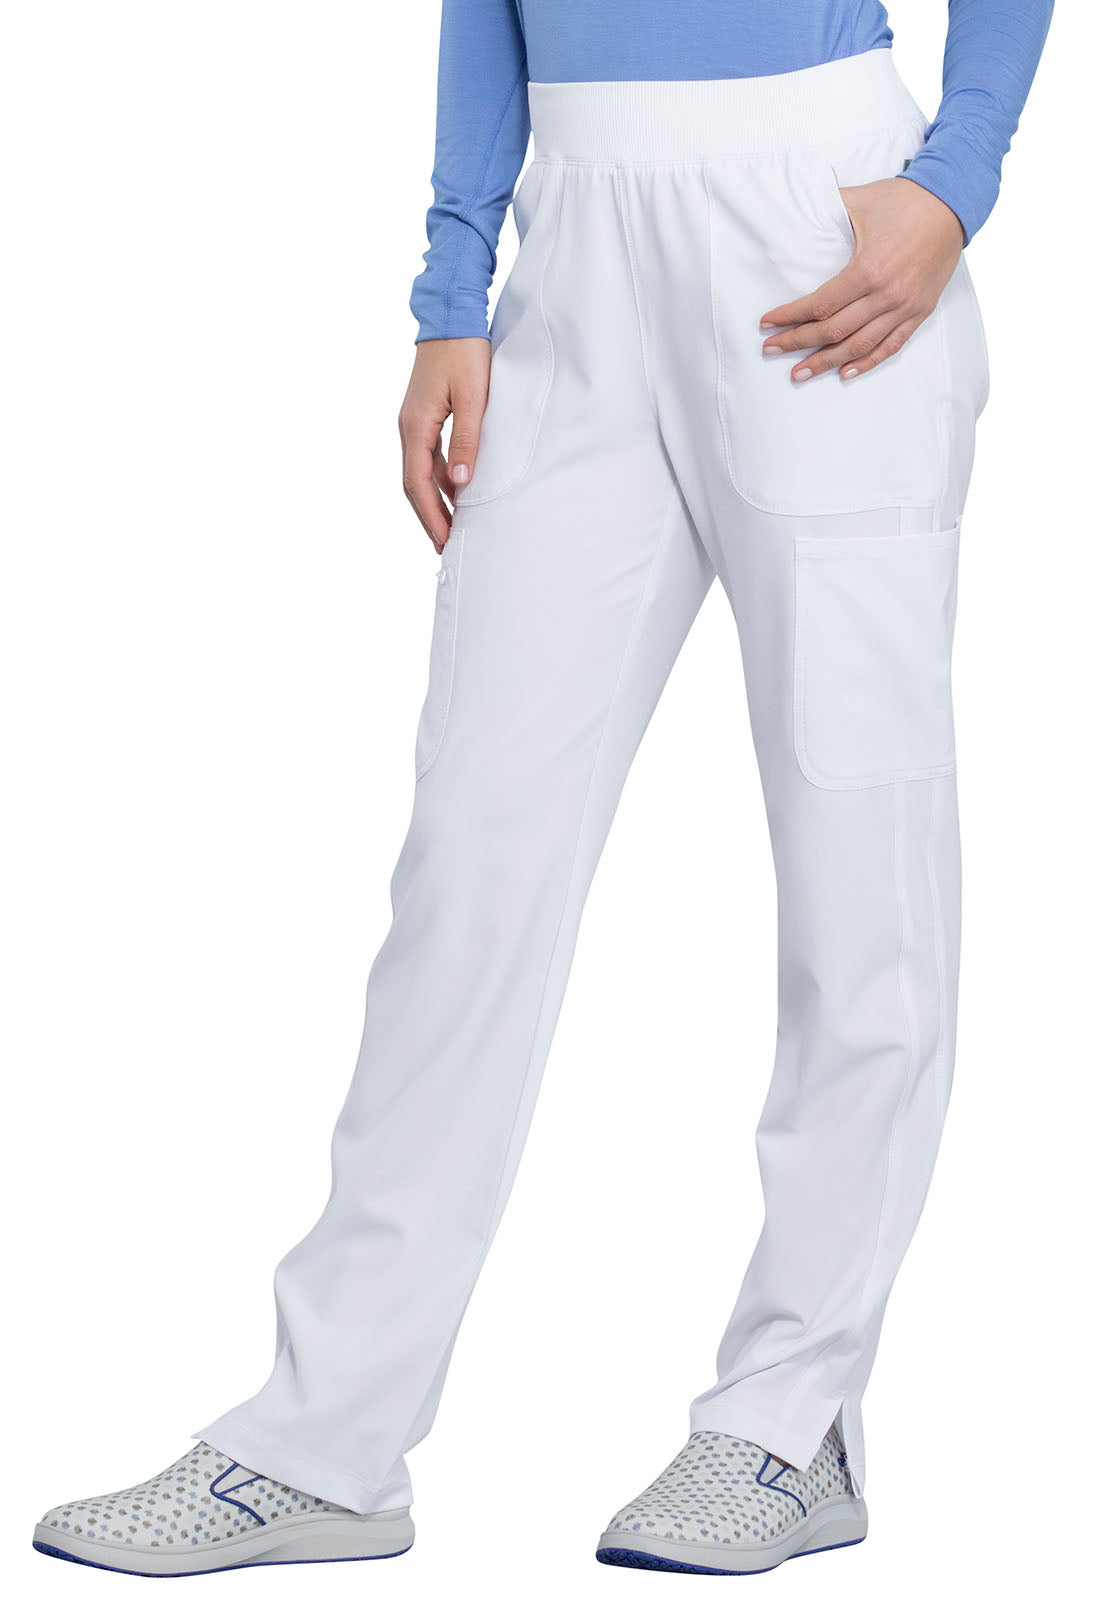 women's medical uniform pants	, fashionable nurses uniforms